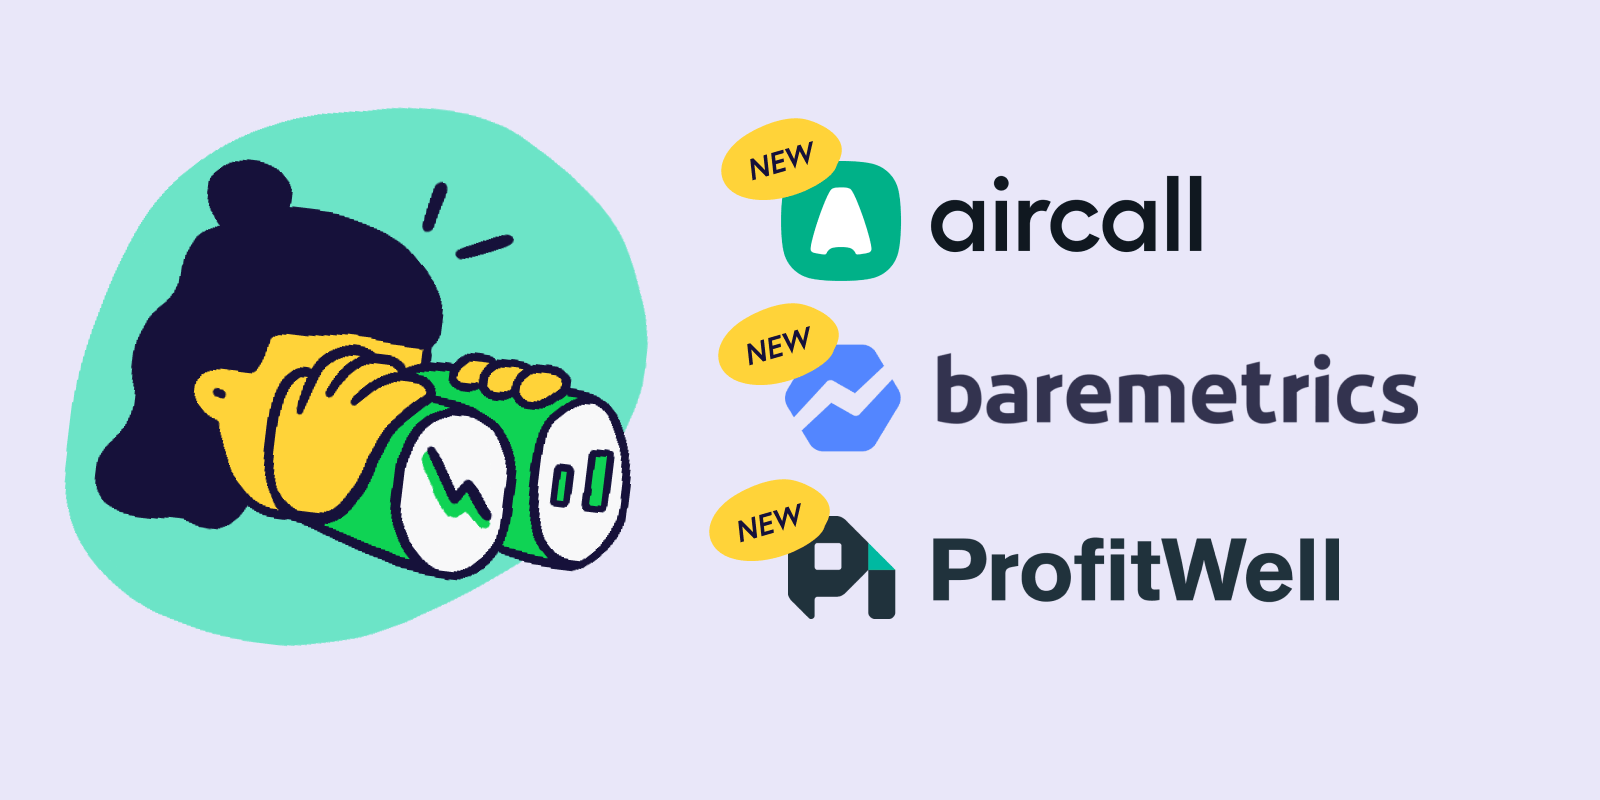 new-profitwell-aircall-baremetrics.png